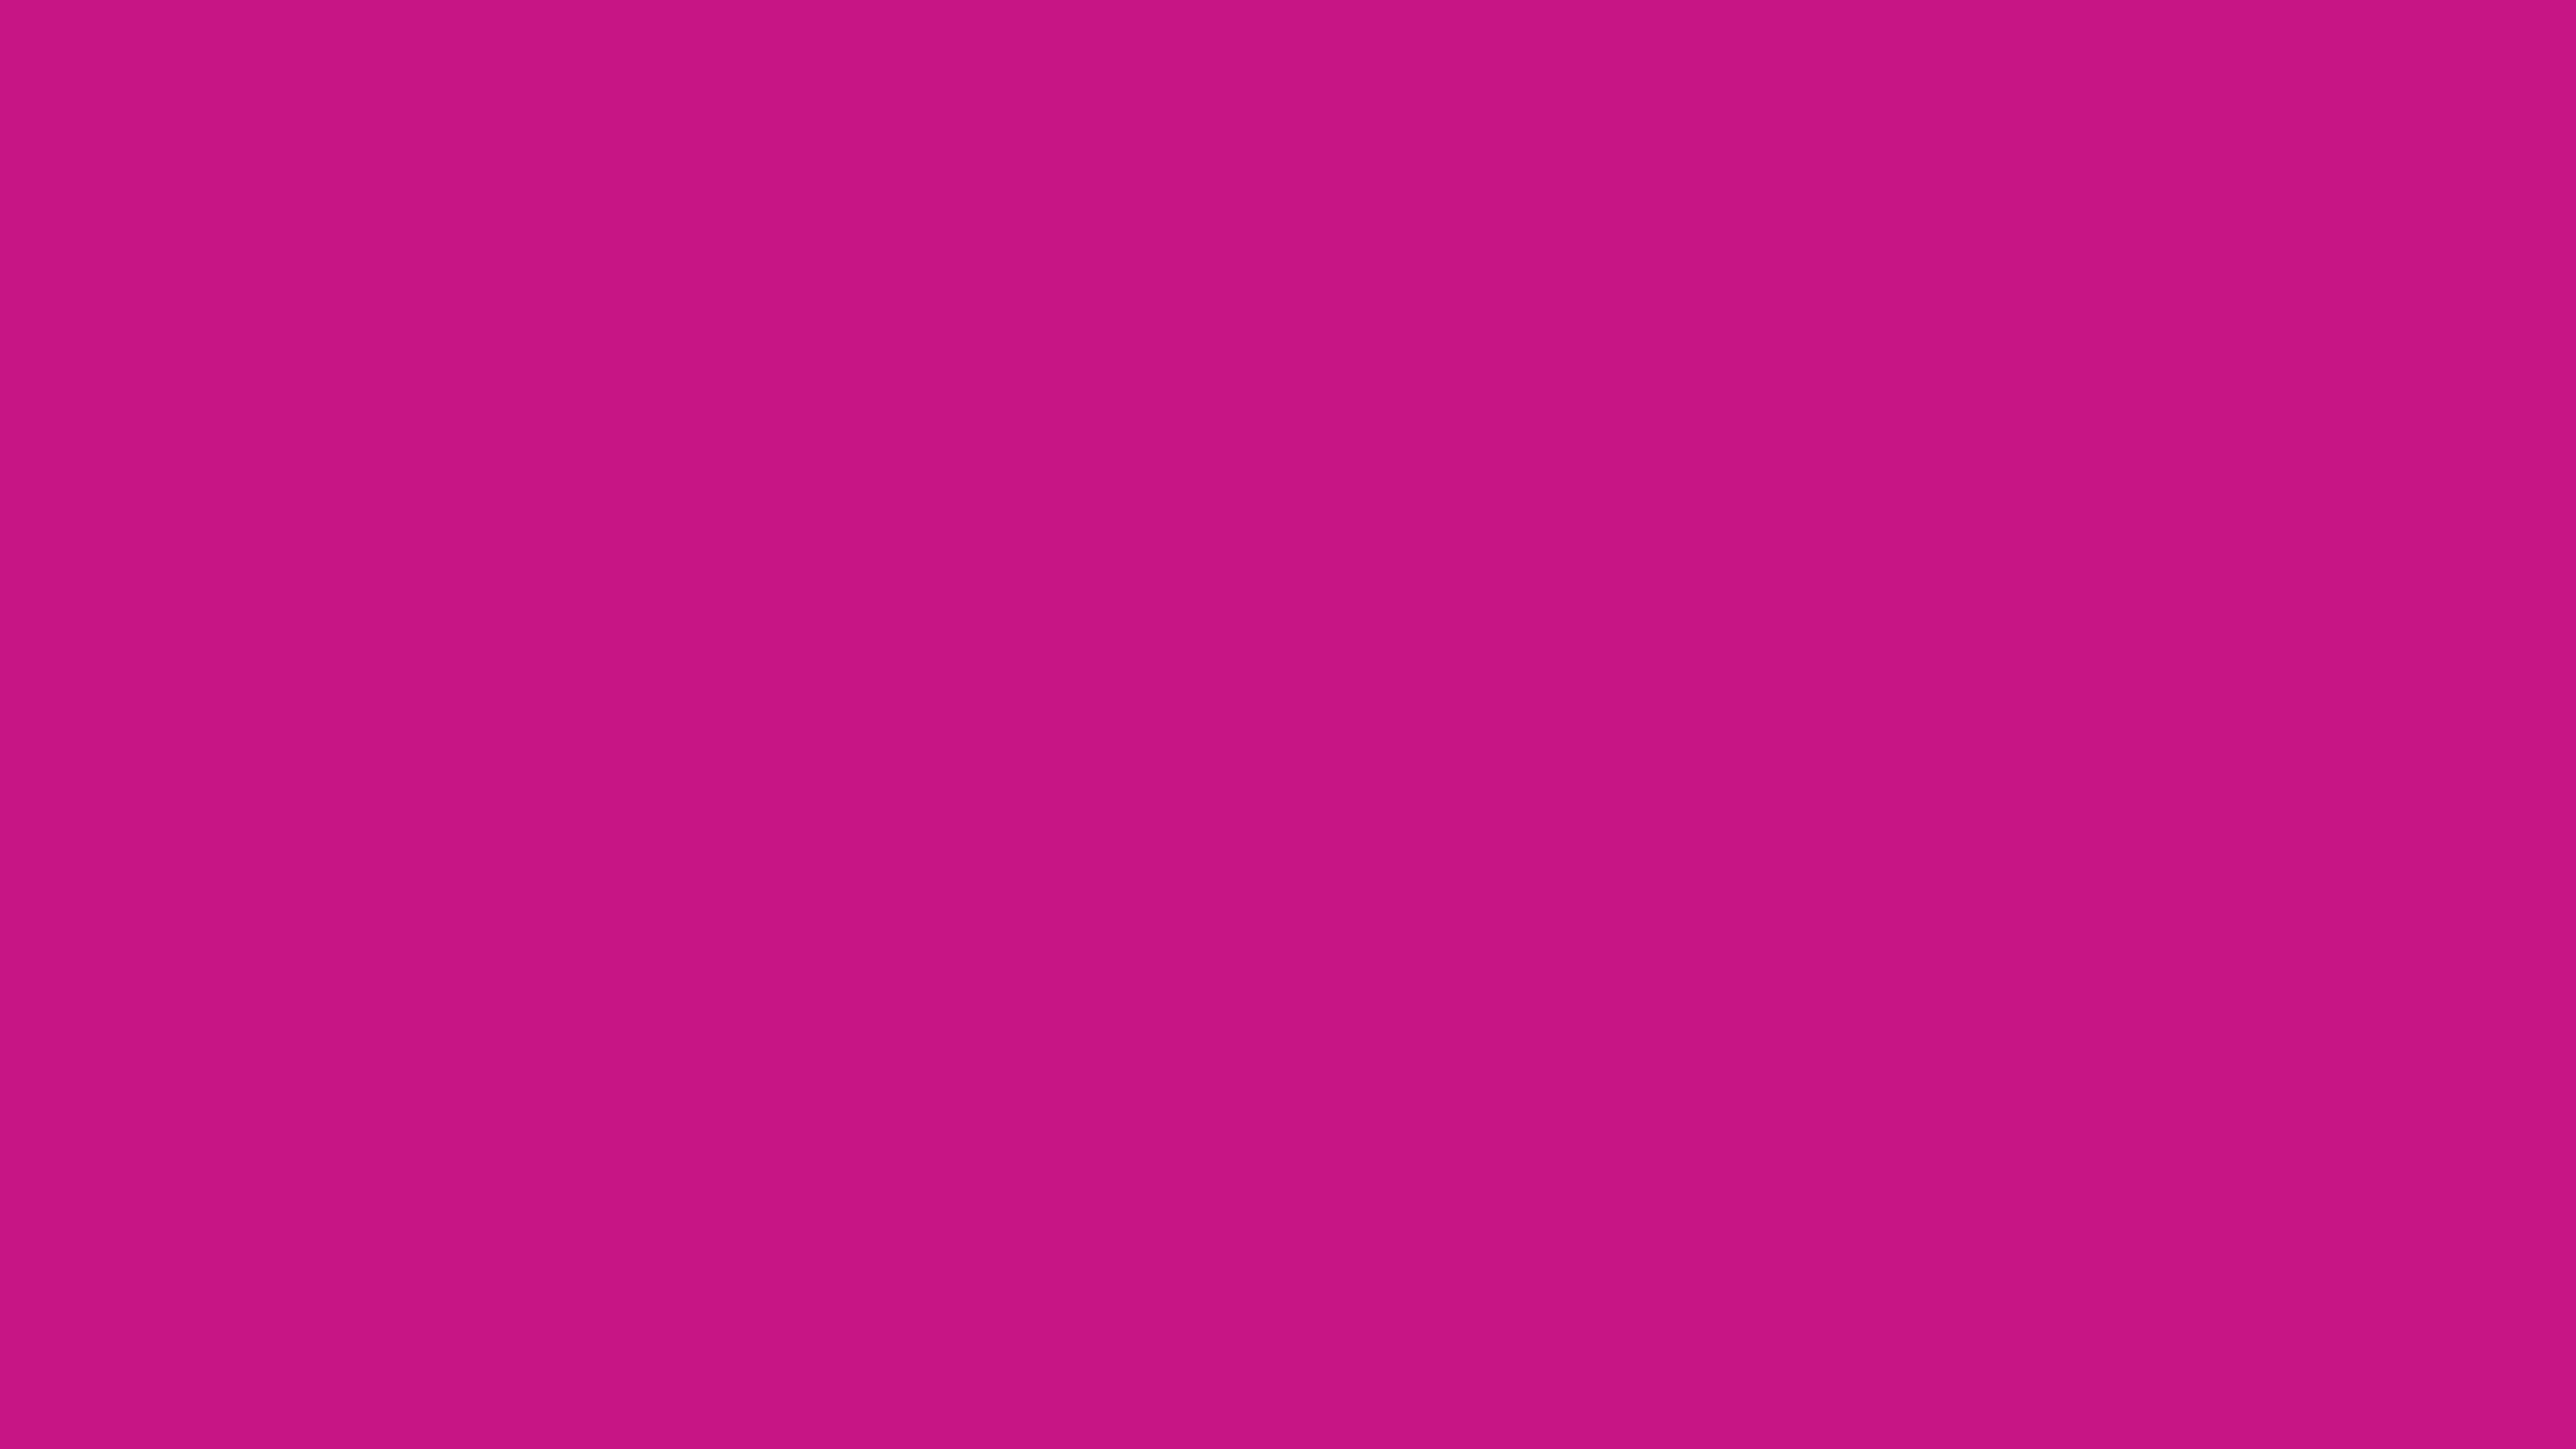 4096x2304 Medium Violet-red Solid Color Background